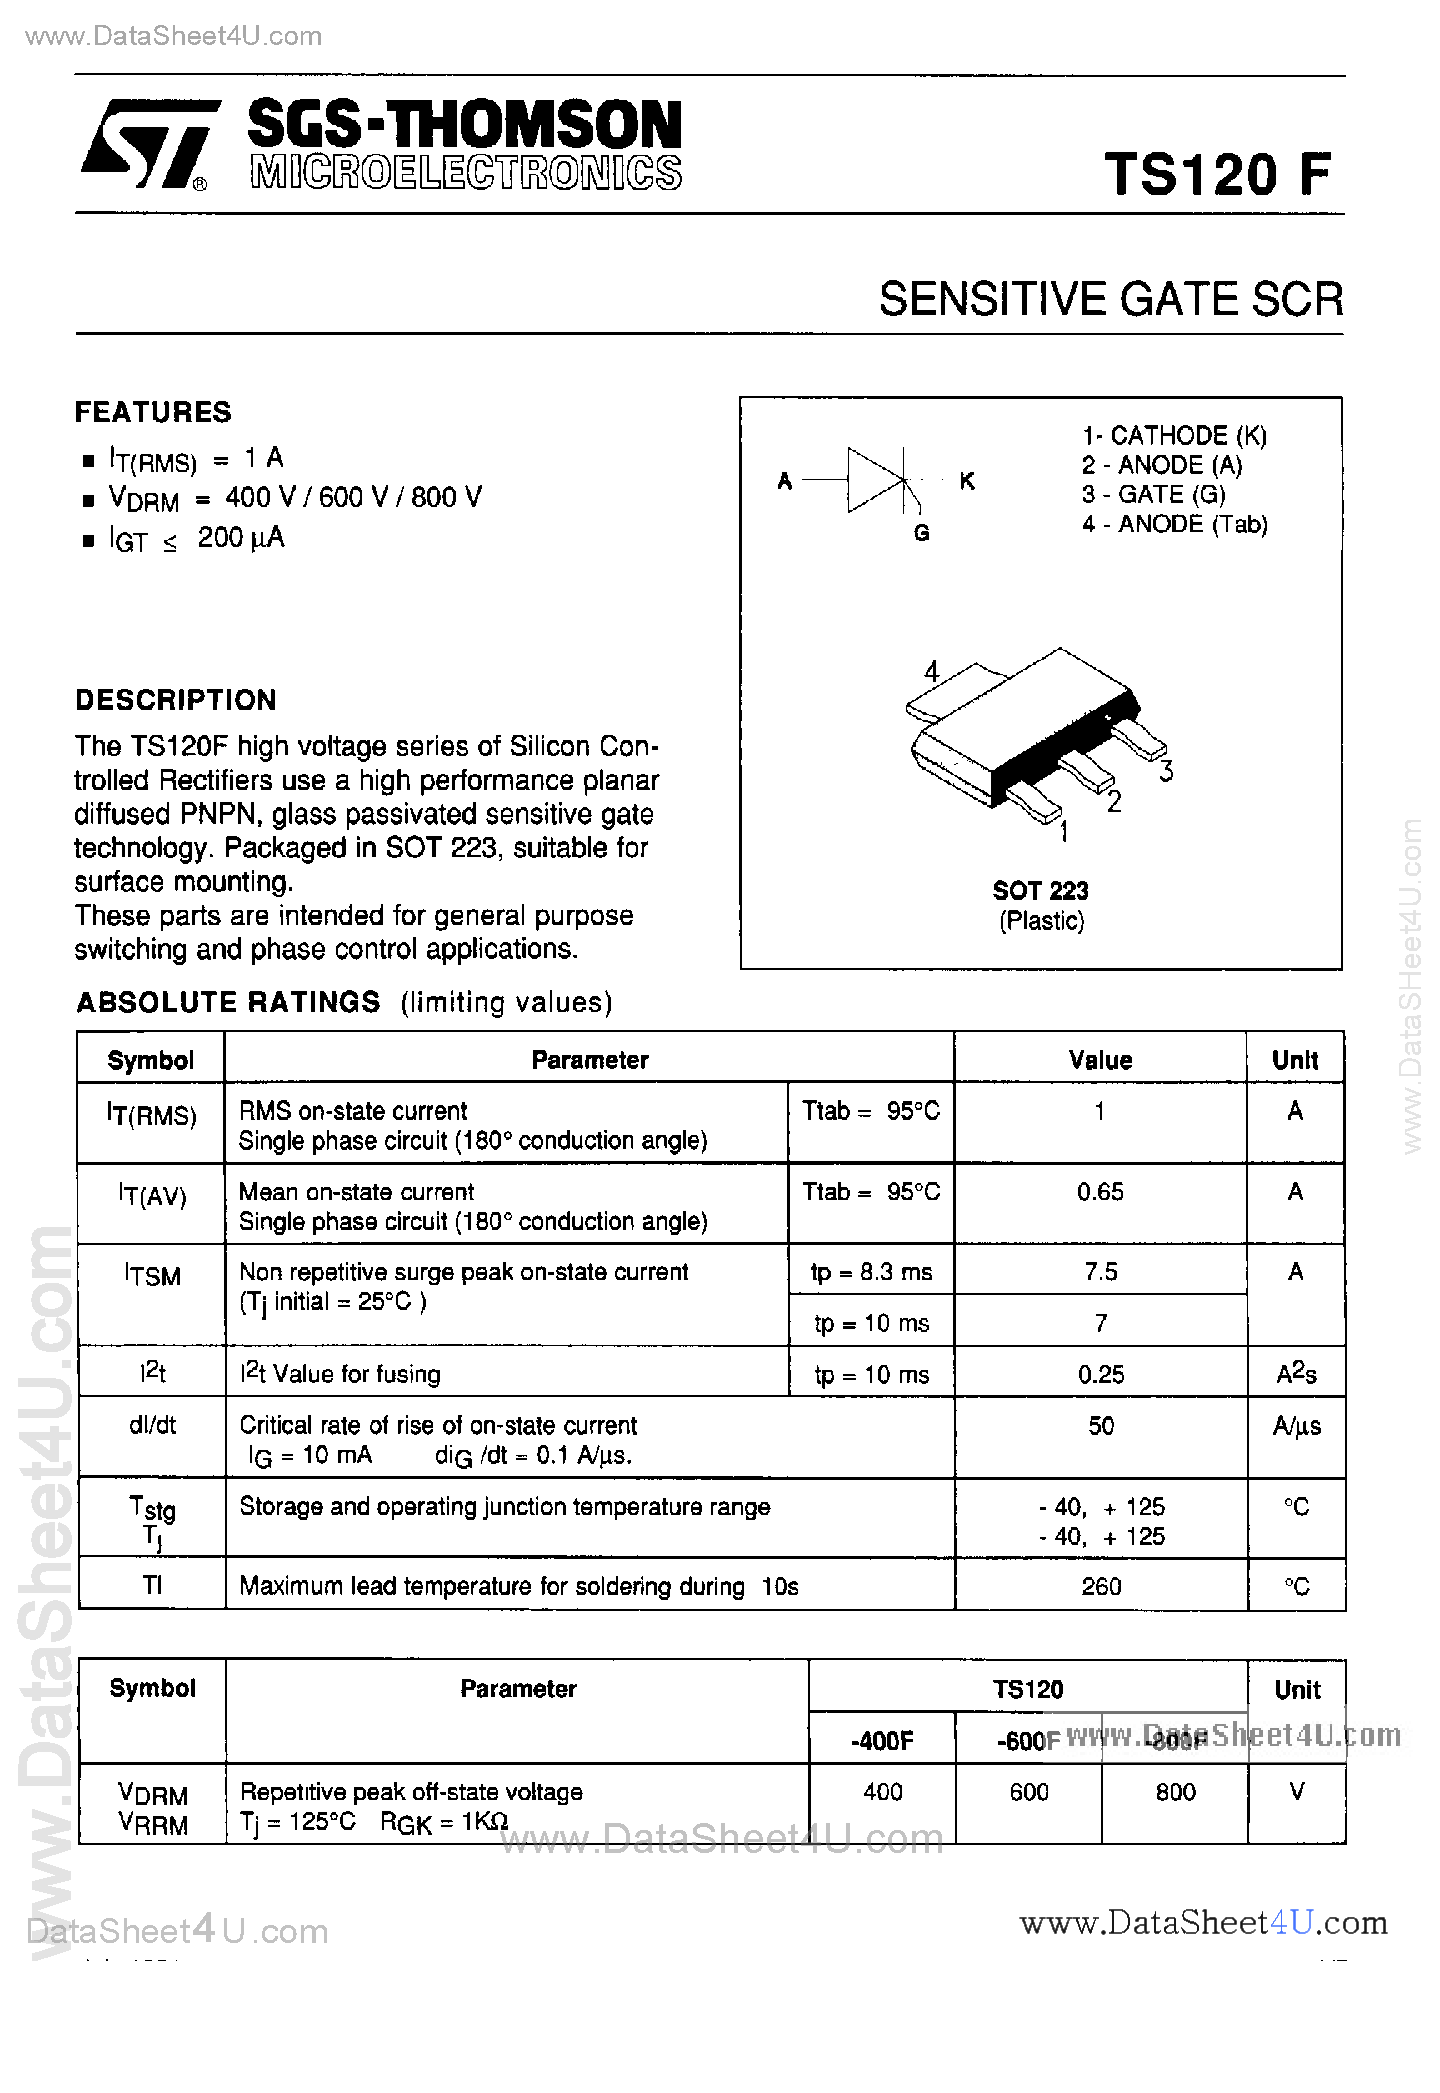 Datasheet TS120-400F - (TS120F) Sensitive Gate SCR page 1